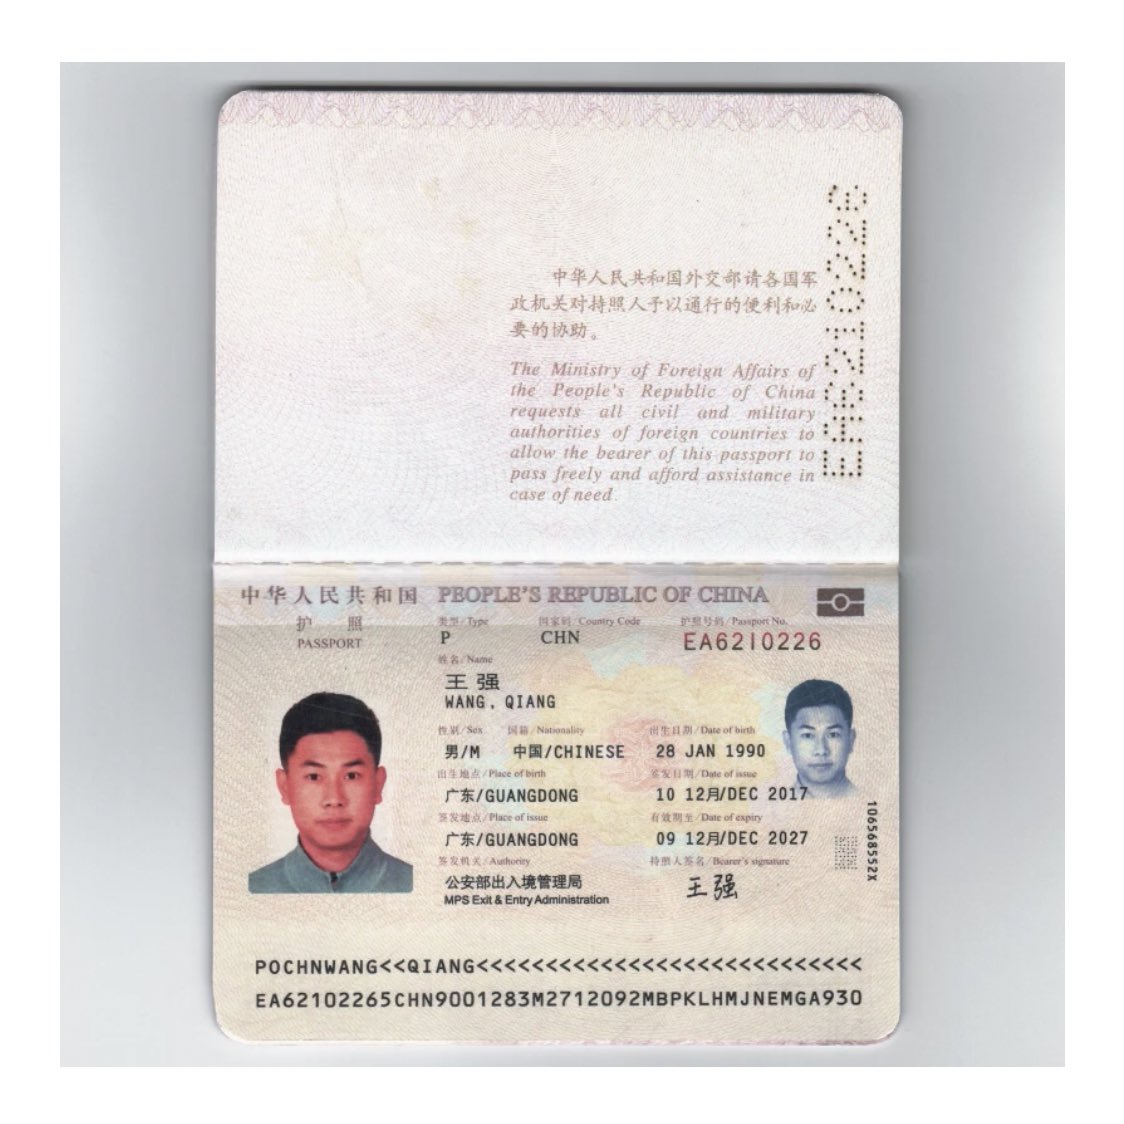 孫向文 Twitterren 中国共産党の工作員が偽造の韓国パスポートで豪州に不法入国し 豪州で香港デモ 台湾選挙を妨害する世論工作をする容疑で逮捕された 日本にも潜んでいるはずです T Co F12ib3oytl